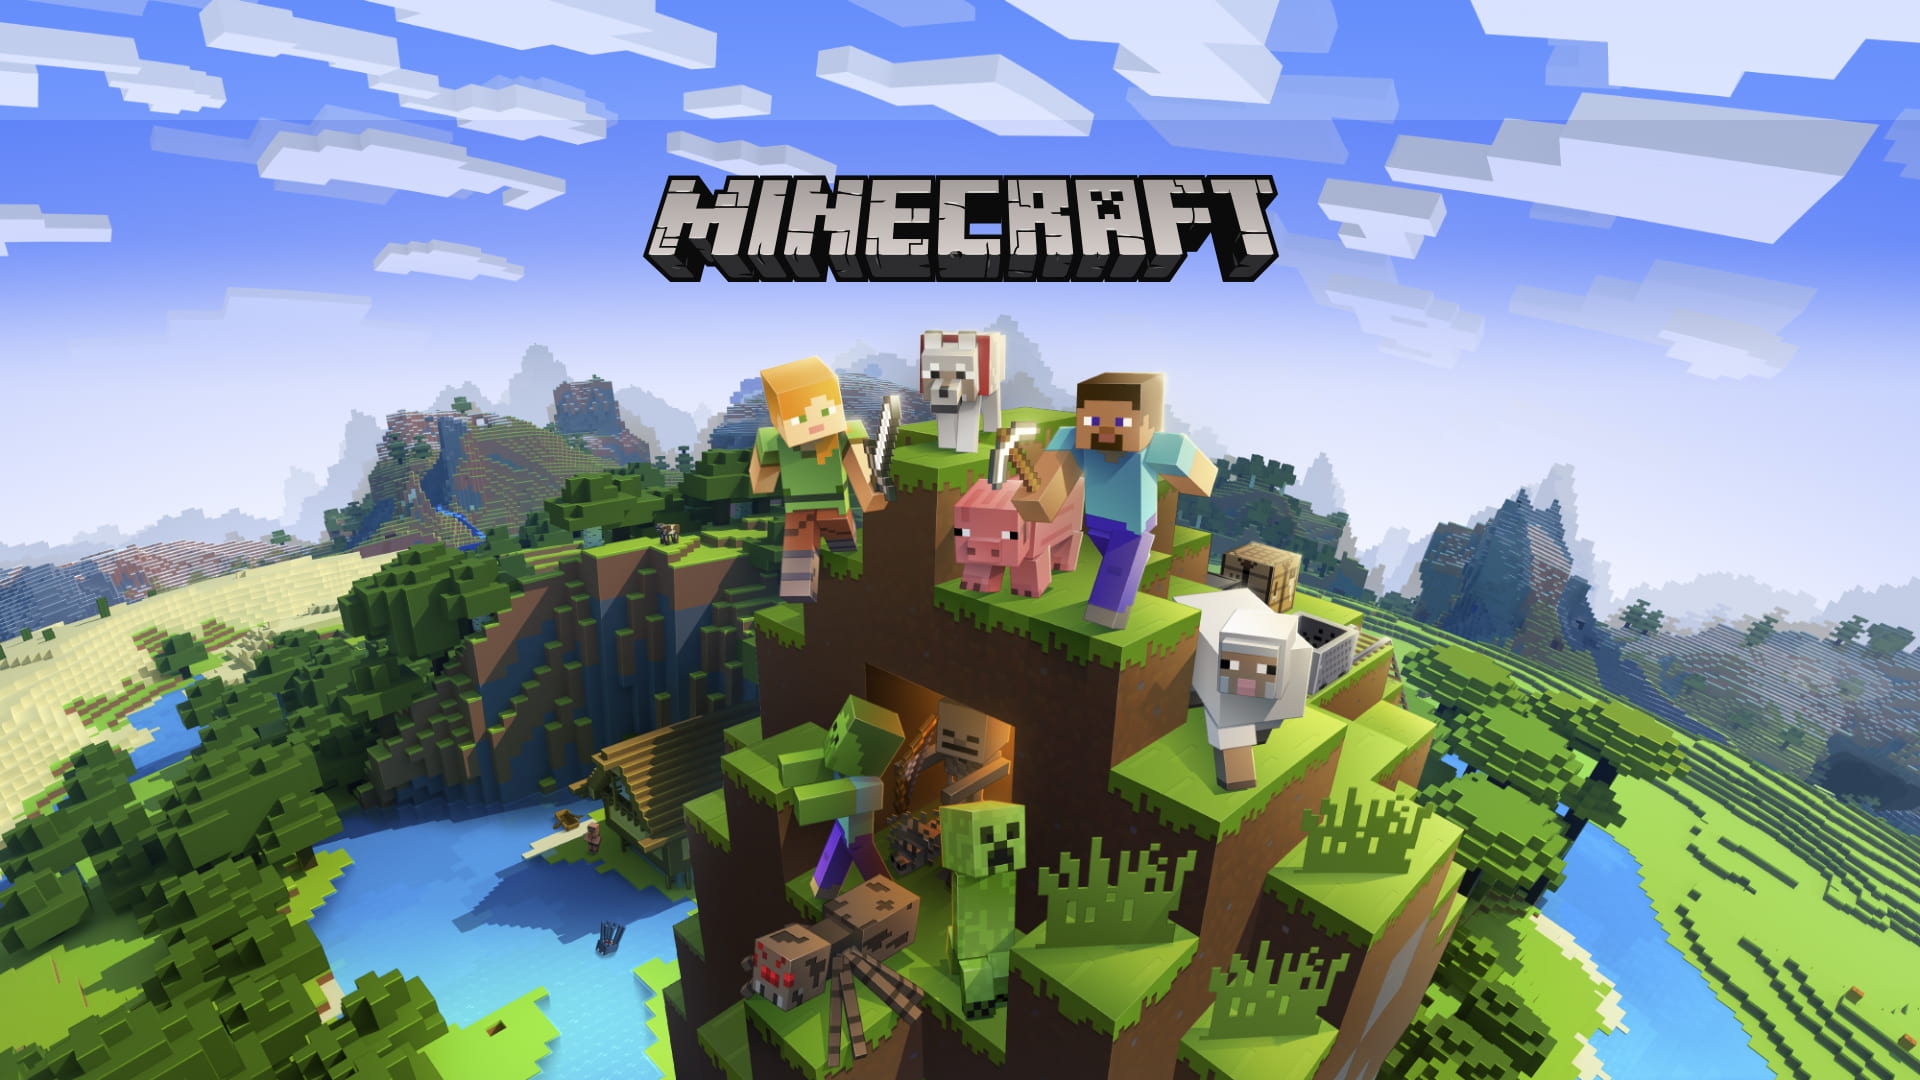 Logotipo Vetor Jogo Minecraft Aplicação Steam Mojang Studios Xbox